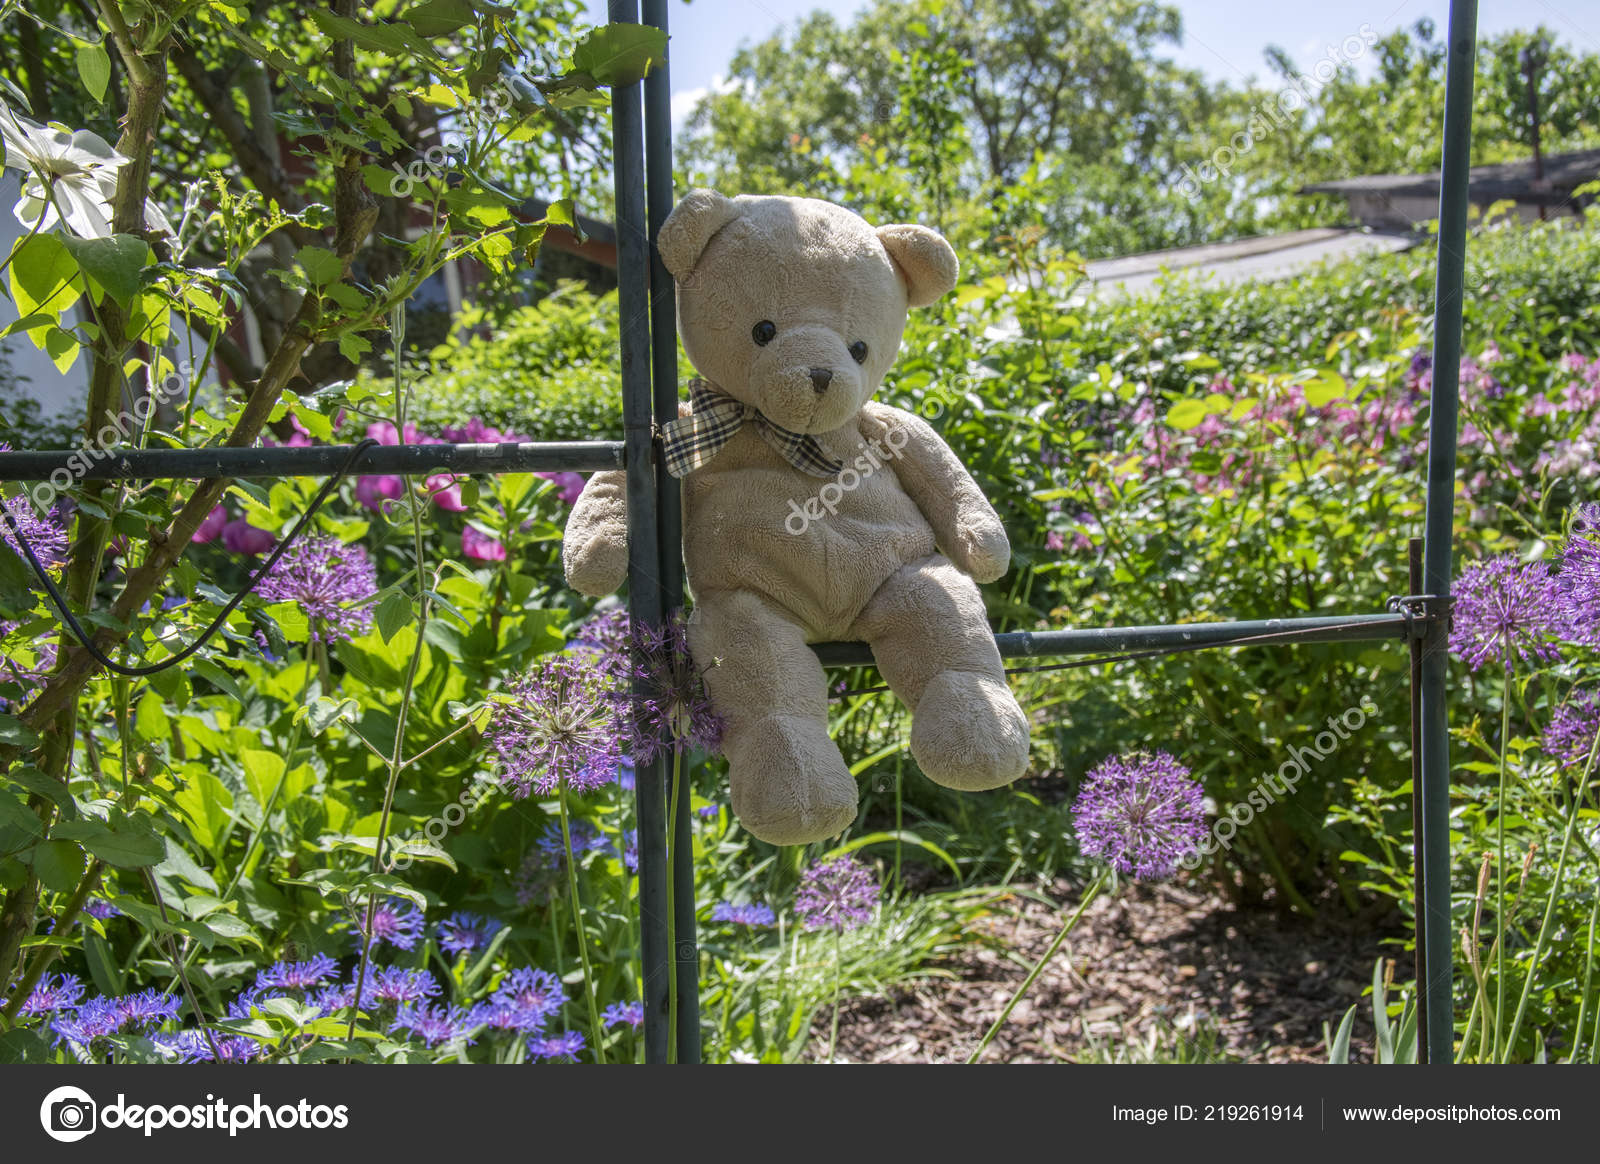 teddy bear garden